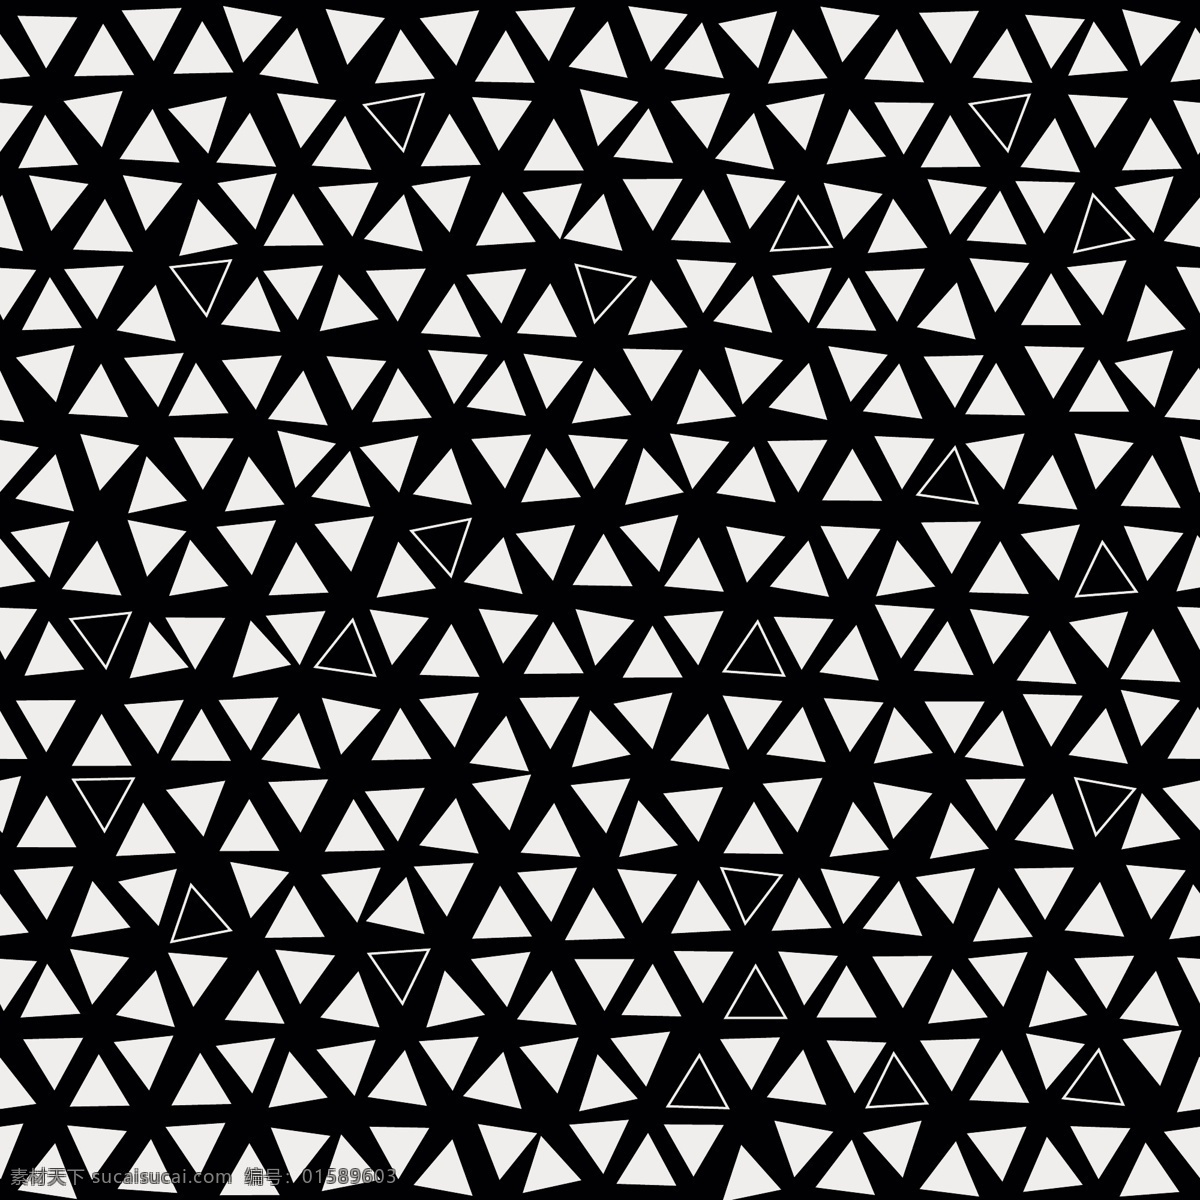 黑色 白色 图案 三角形 背景 模式 抽象背景 抽象 几何 三角 黑背景 几何背景 几何图形 三角背景 多边形 黑色和白色 无缝图案 无缝 三角形图案 图案背景